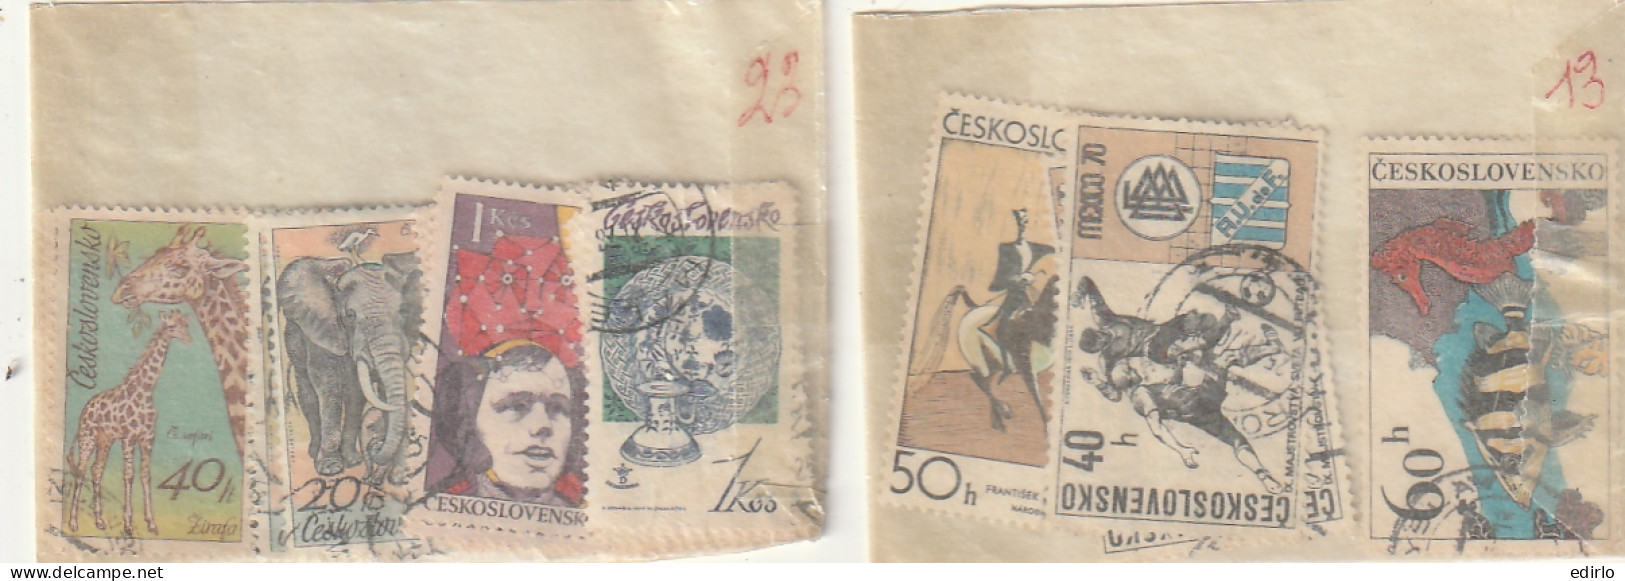 ///   TCHEKOSLOVAQUIE ///  COLLECTION EN POCHETTES (timbres Superposés)  - Pas Trop Regardé Pour Pas De Regrets - Collections, Lots & Series